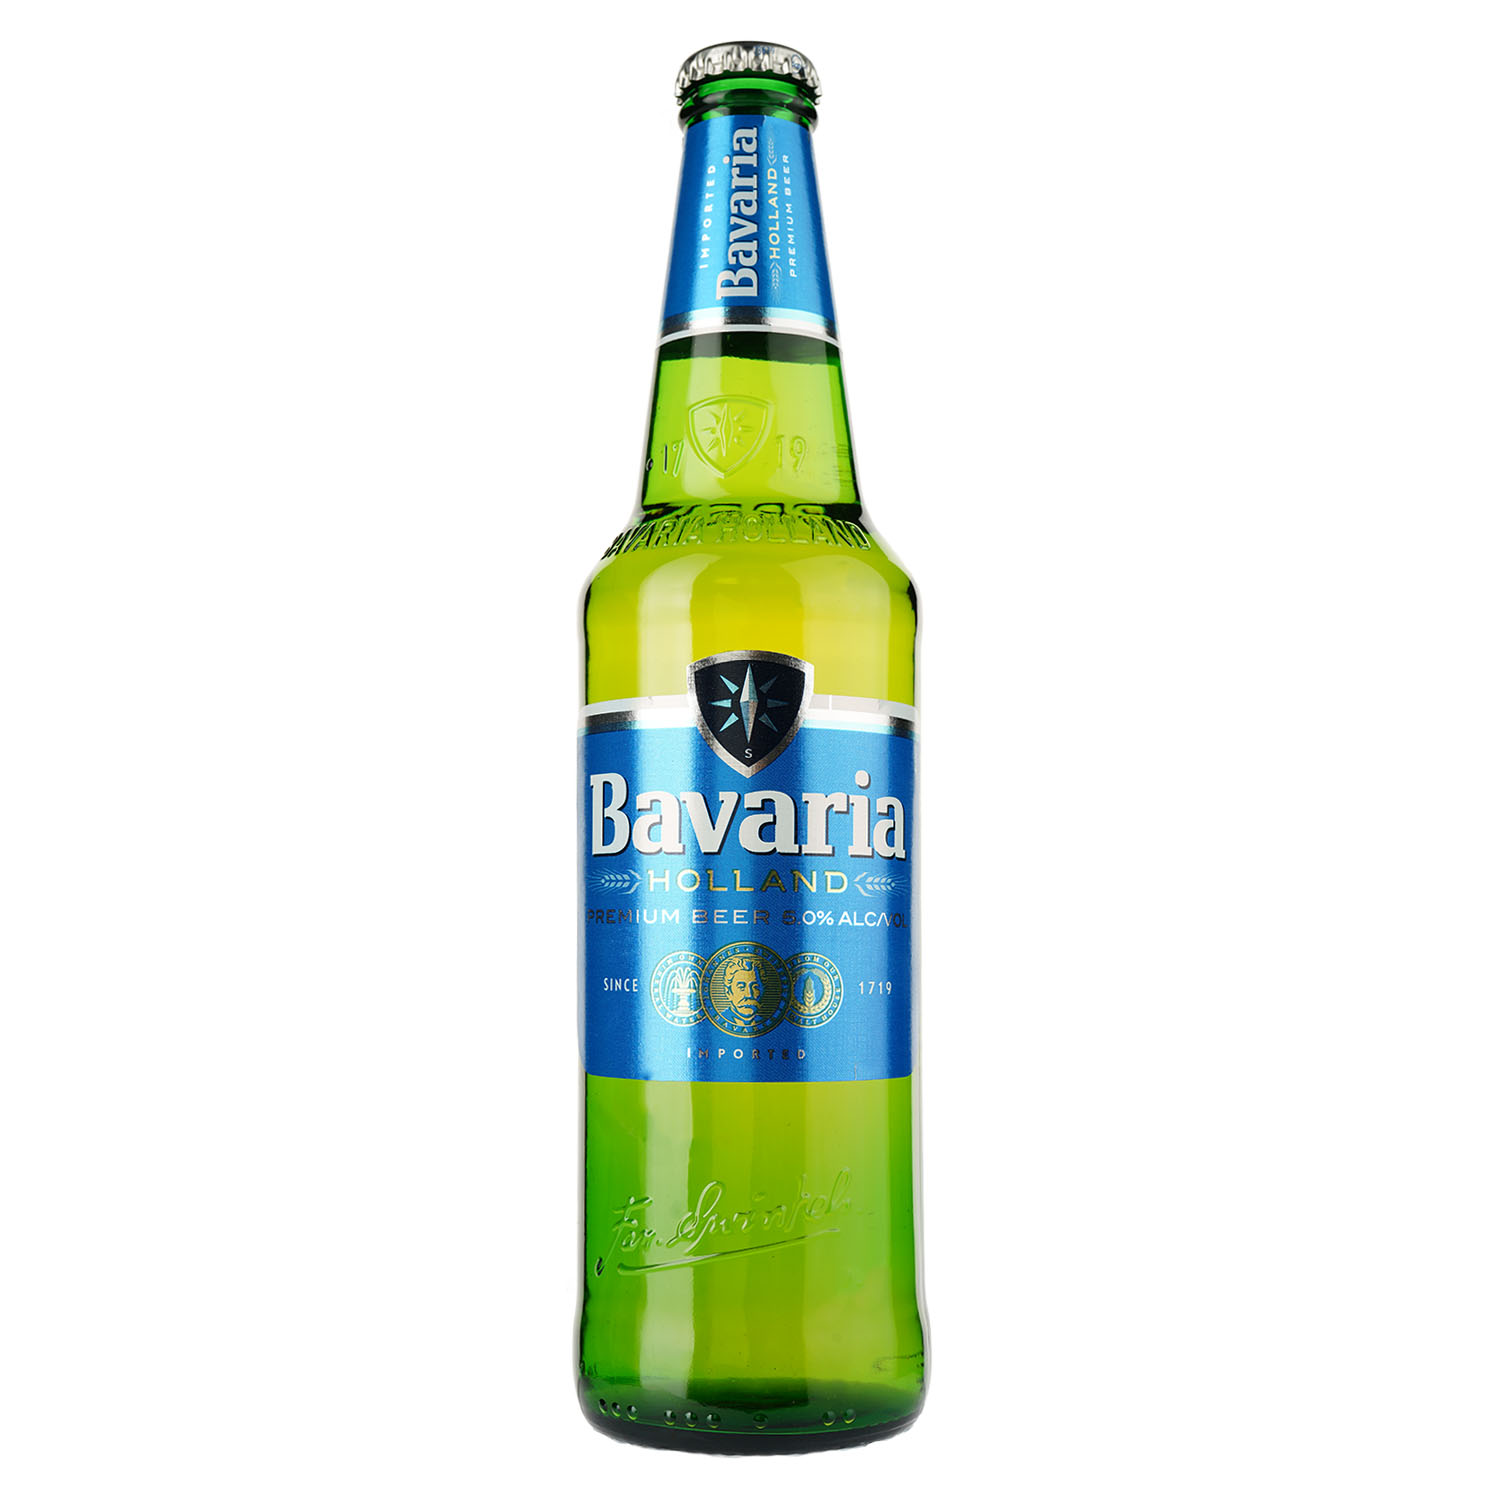 Пиво Bavaria, светлое, фильтрованное, 5%, 0,5 л - фото 1